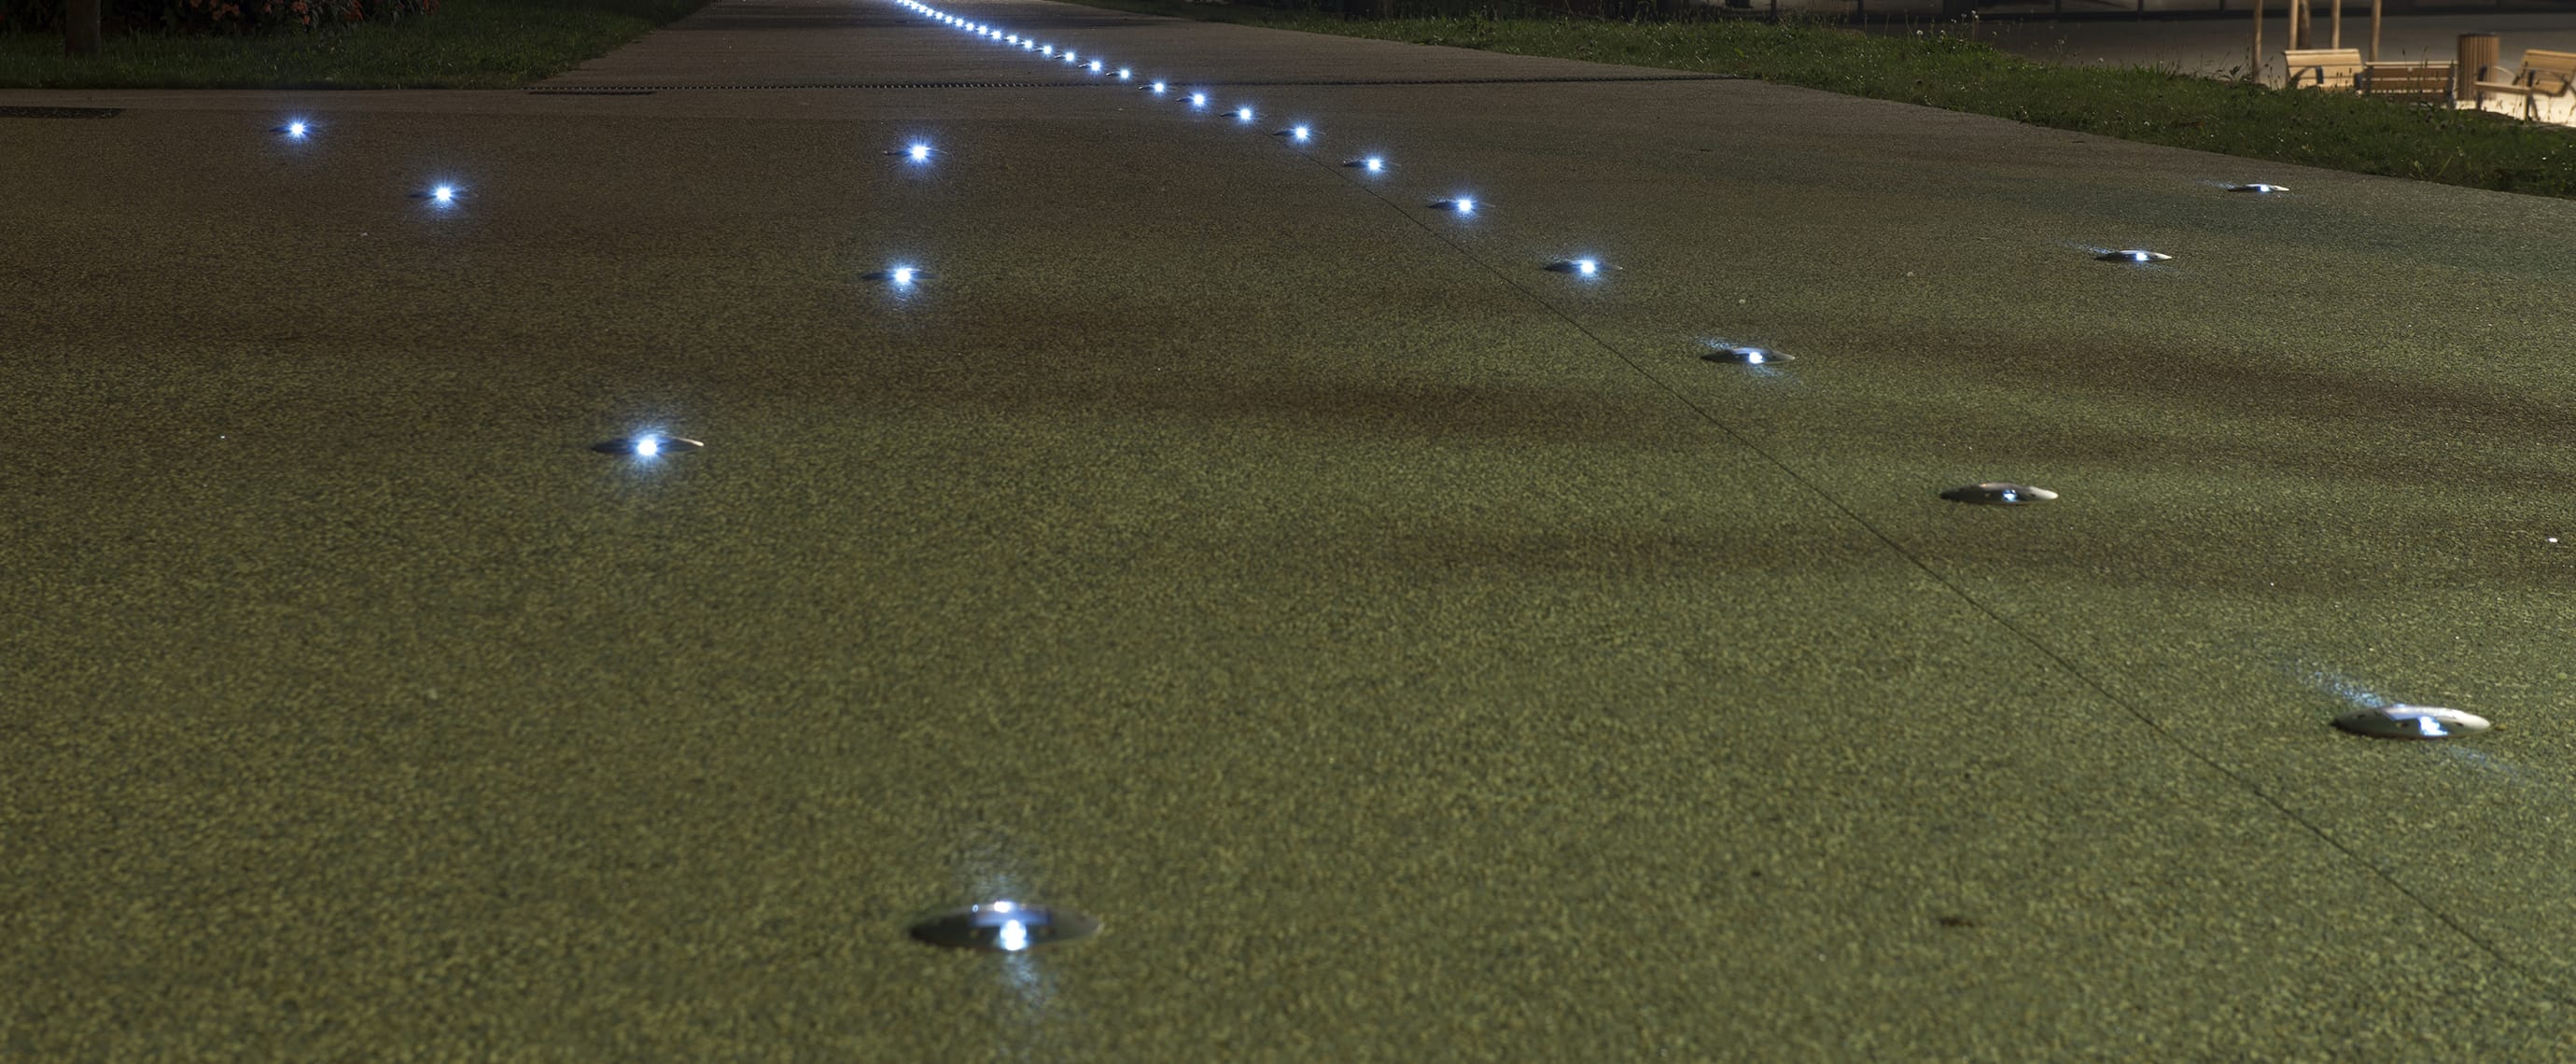 Plot solaire piéton sur promenade balisage LED ECO-143 Eco-Innov